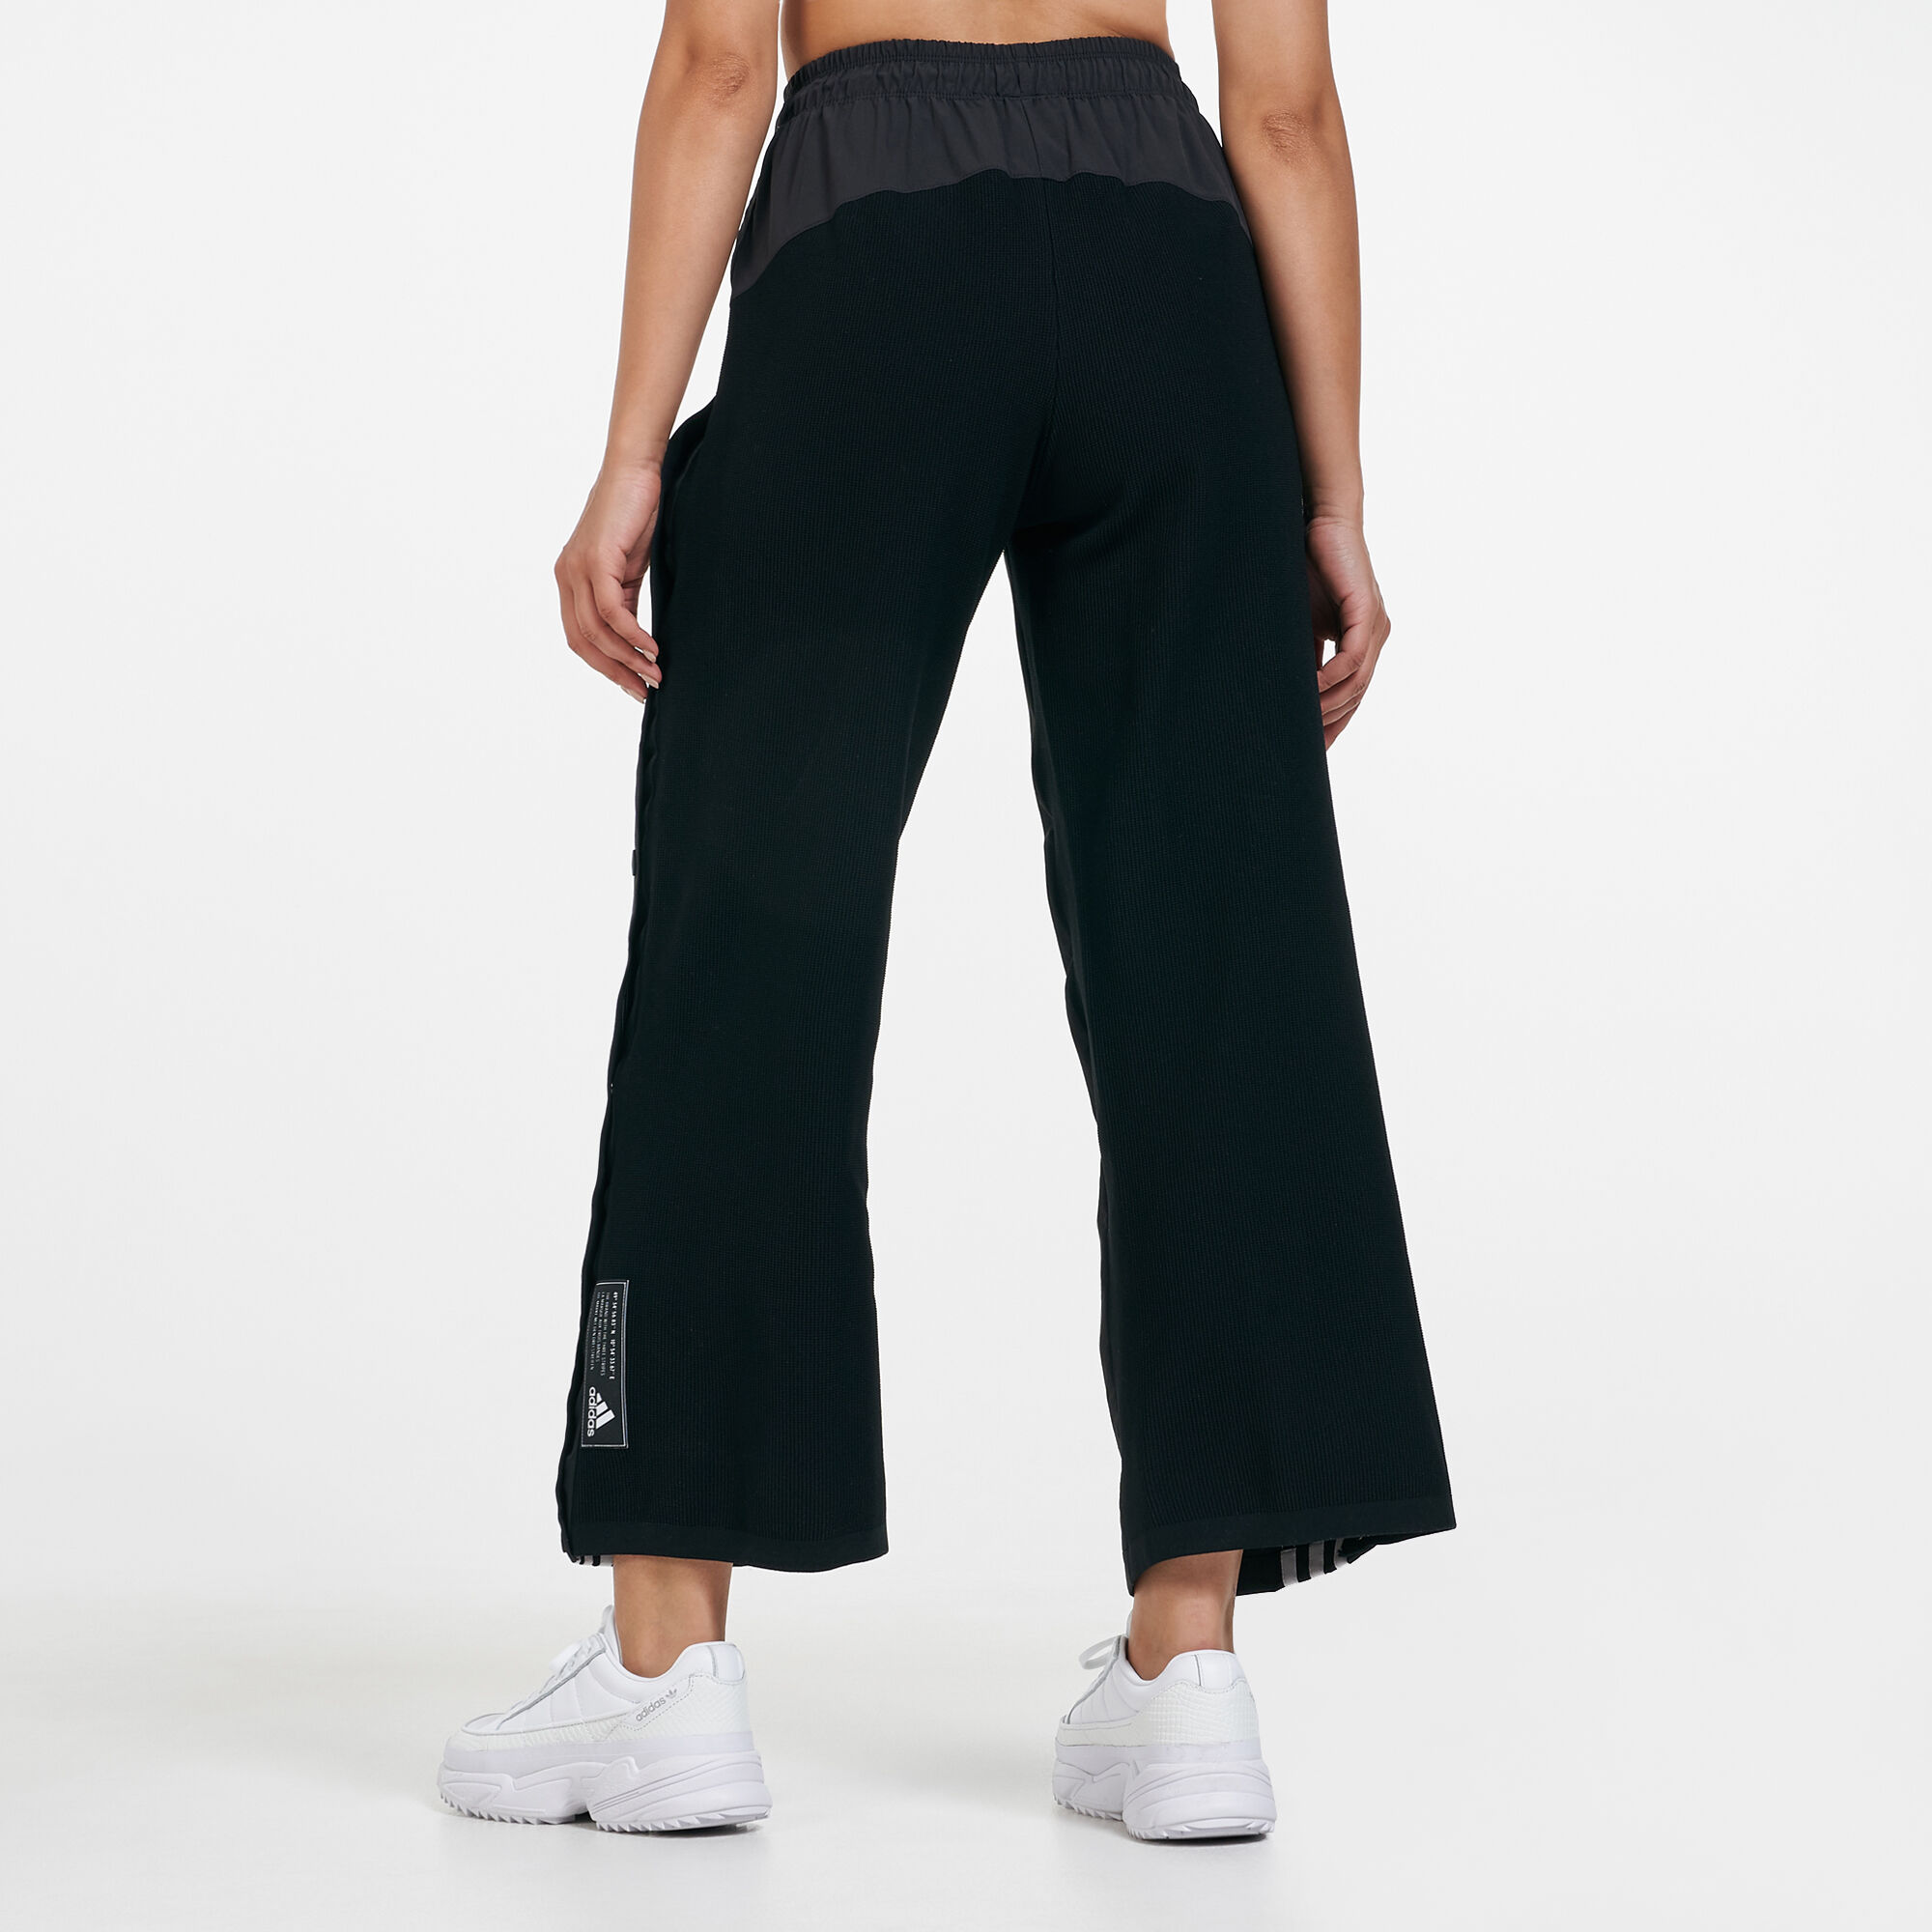 Buy Black Track Pants for Women by Reebok Online  Ajiocom